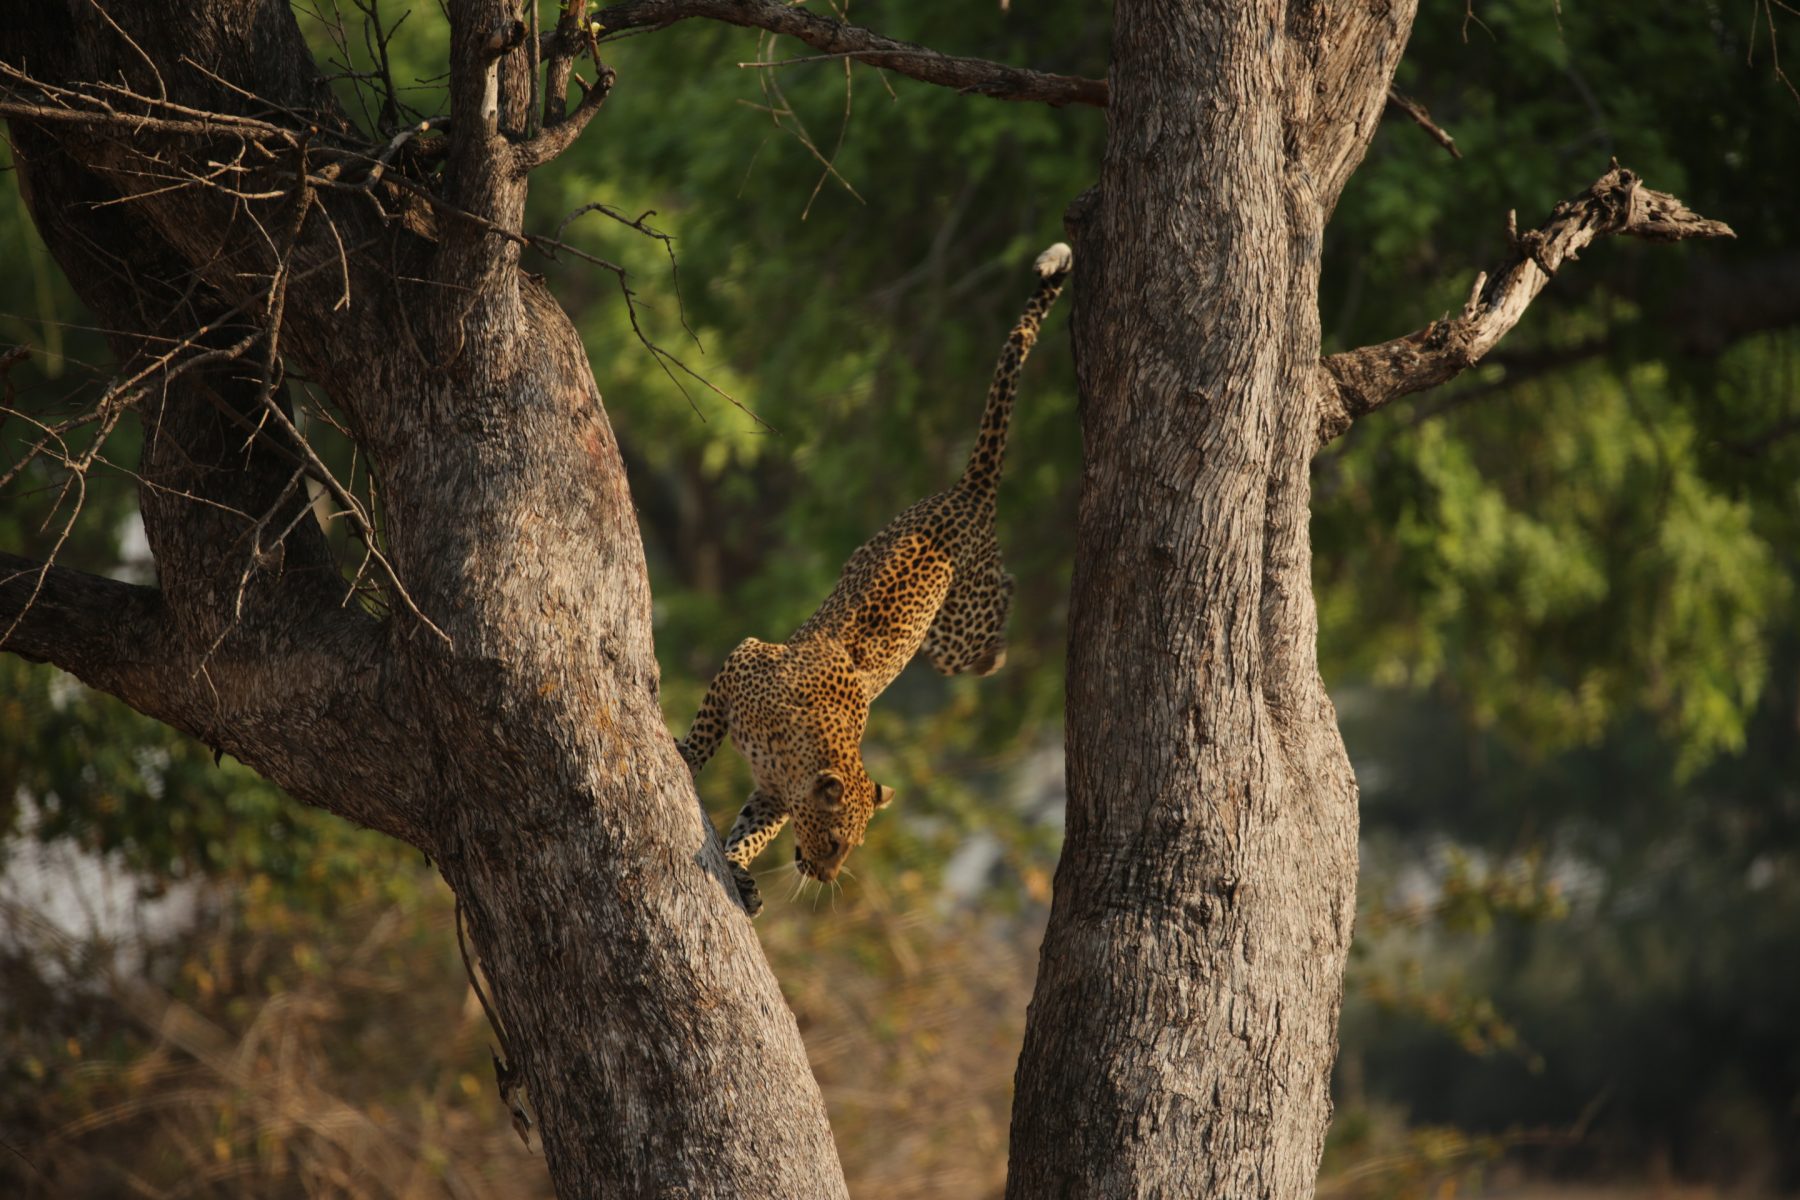 Een luipaard springt uit een boom in Zuid-Afrika. Een van de weinige speciale luipaarden die meer dan 9 meter naar de toppen van bomen klimmen om op prooien te jagen. Het is een riskante strategie waarbij één verkeerde beweging tot hun eigen ondergang kan leiden.